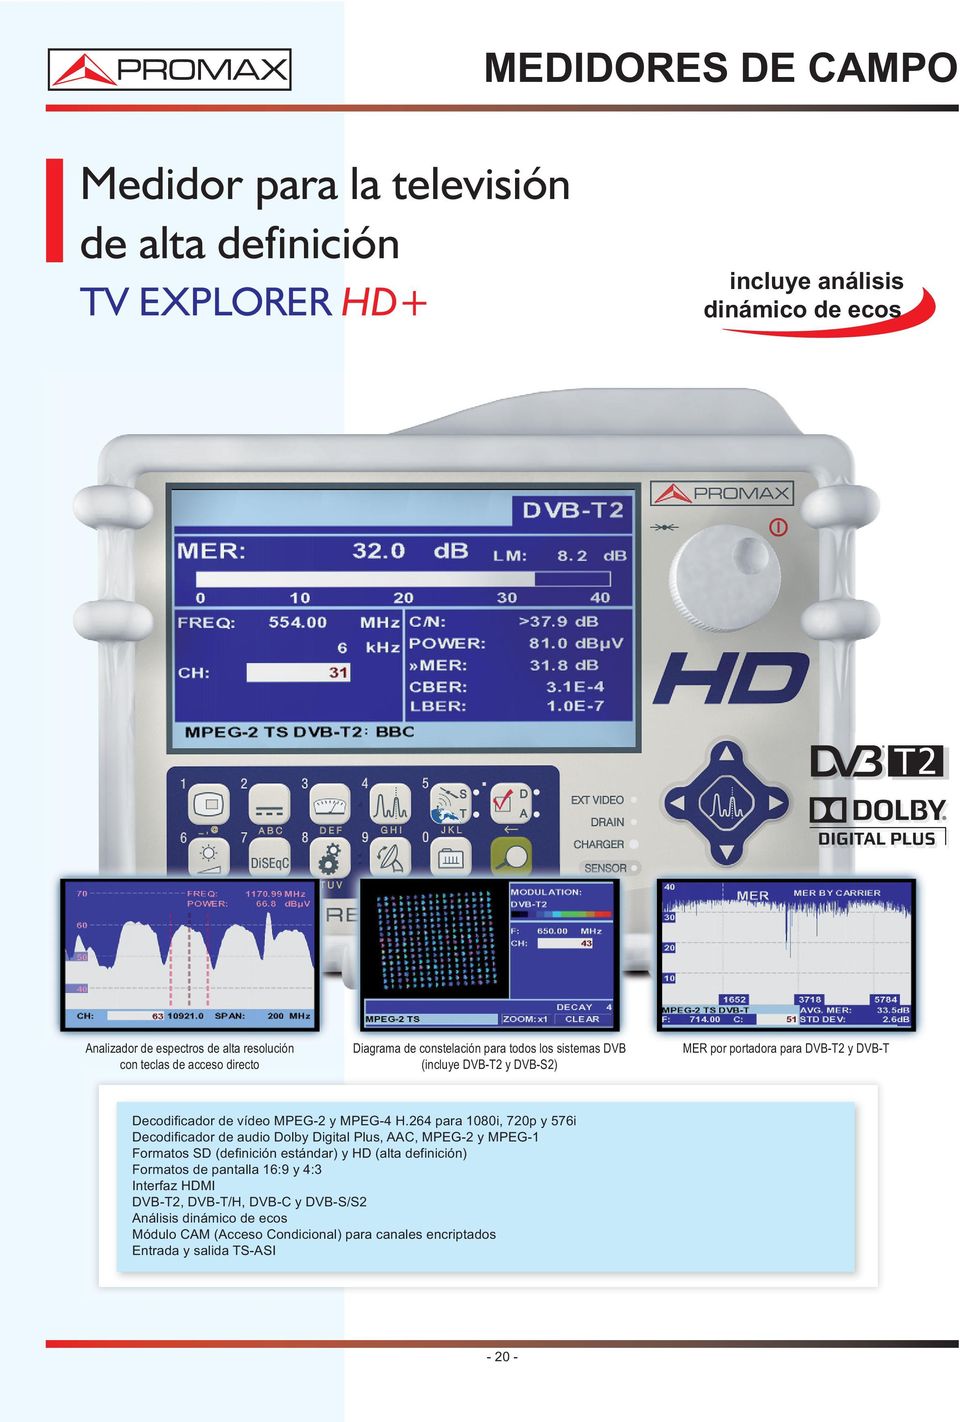 H.264 para 1080i, 720p y 576i Decodificador de audio Dolby Digital Plus, AAC, MPEG-2 y MPEG-1 Formatos SD (definición estándar) y HD (alta definición) Formatos de pantalla